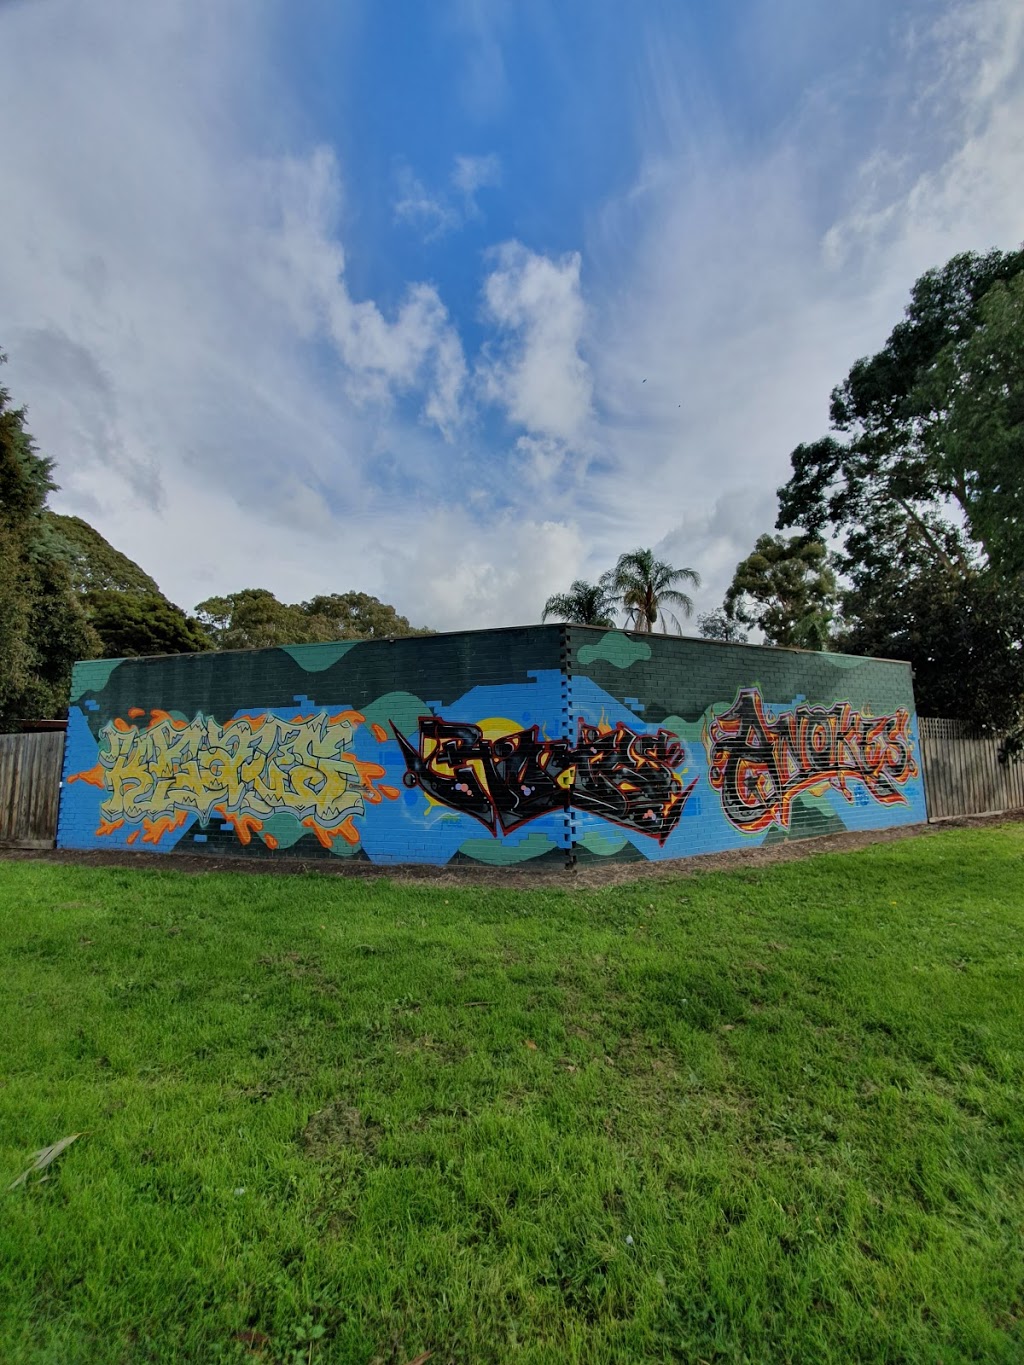 Gracedale Park | park | 38-48 Gracedale Ave, Ringwood East VIC 3135, Australia